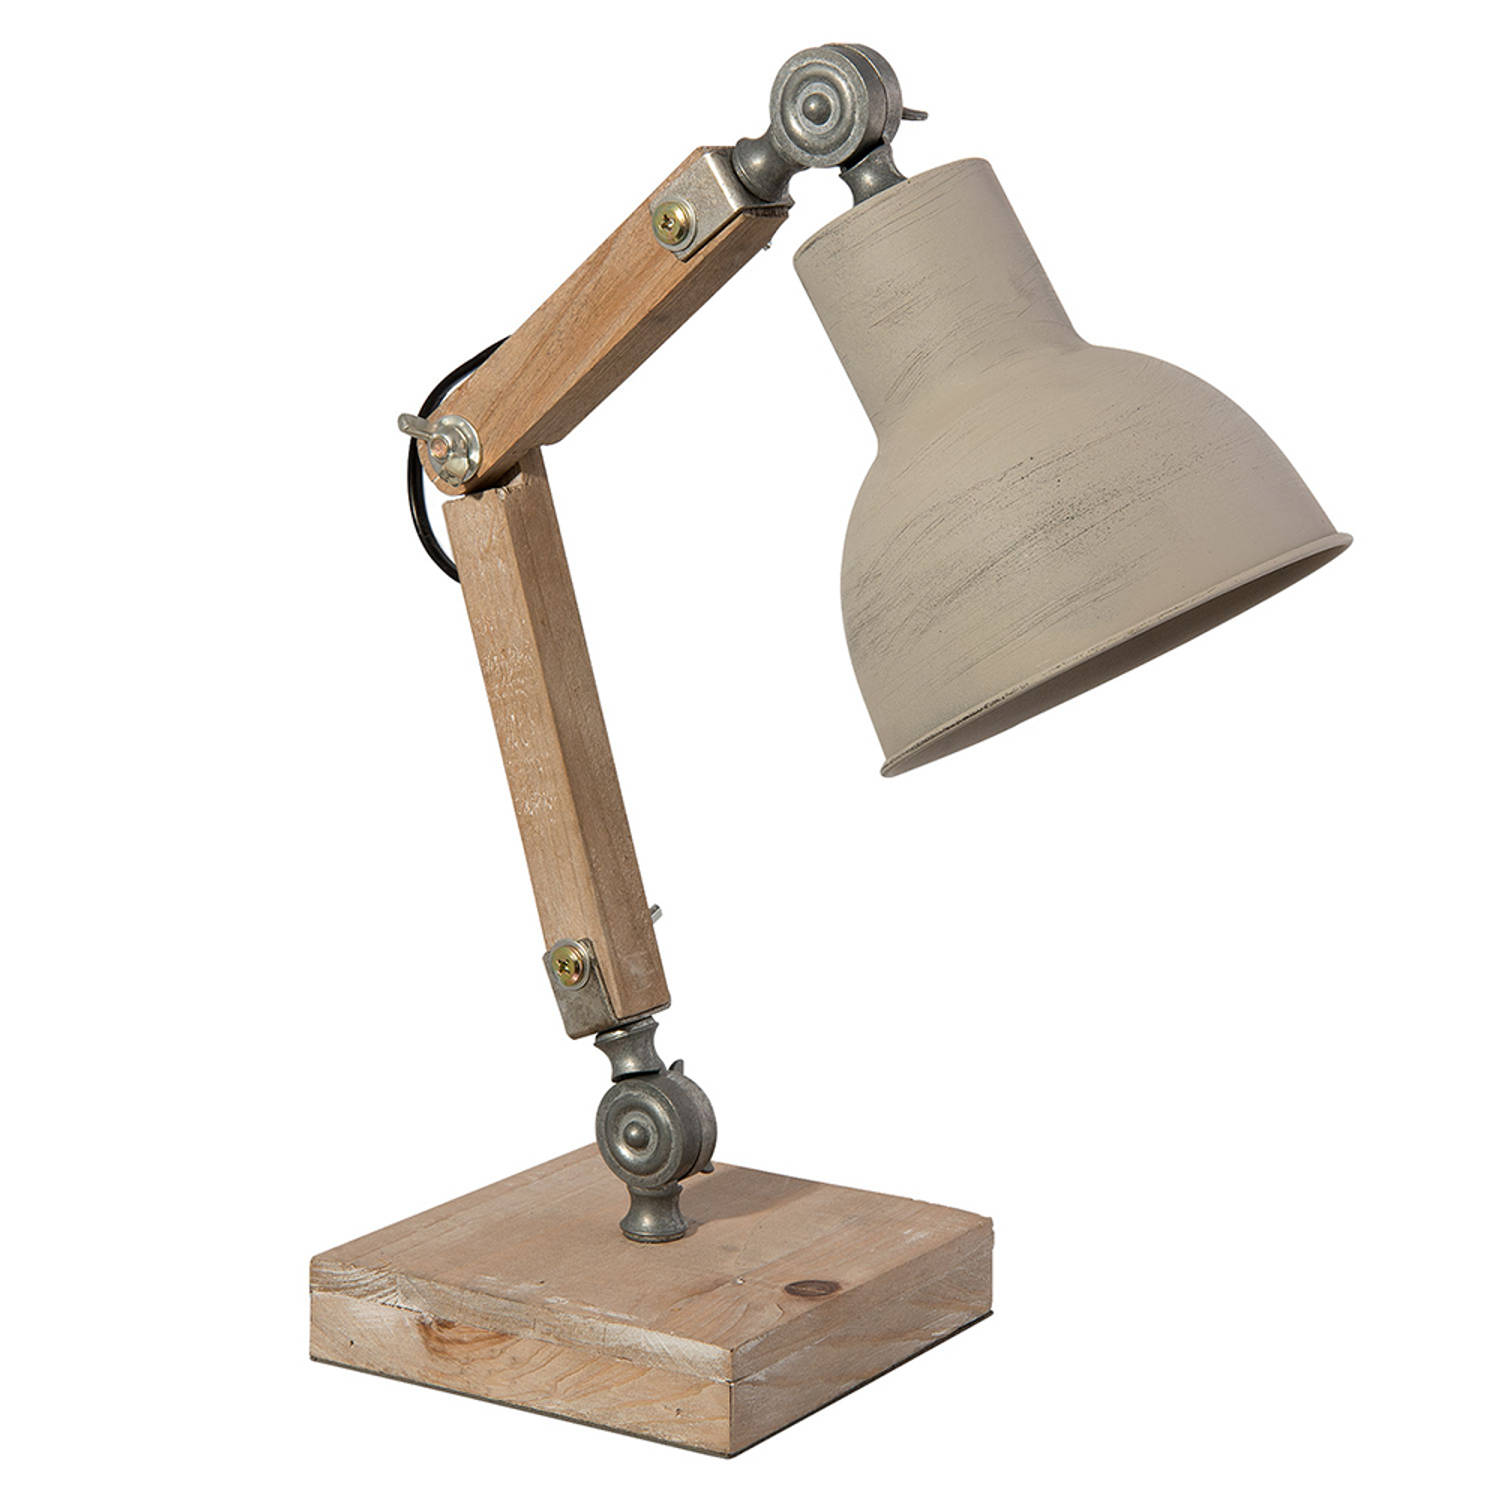 HAES DECO - Bureaulamp - Industrial - Vintage / Retro Lamp, formaat 15x15x47 cm - Bruin Hout en Metaal - Tafellamp, Sfeerlamp